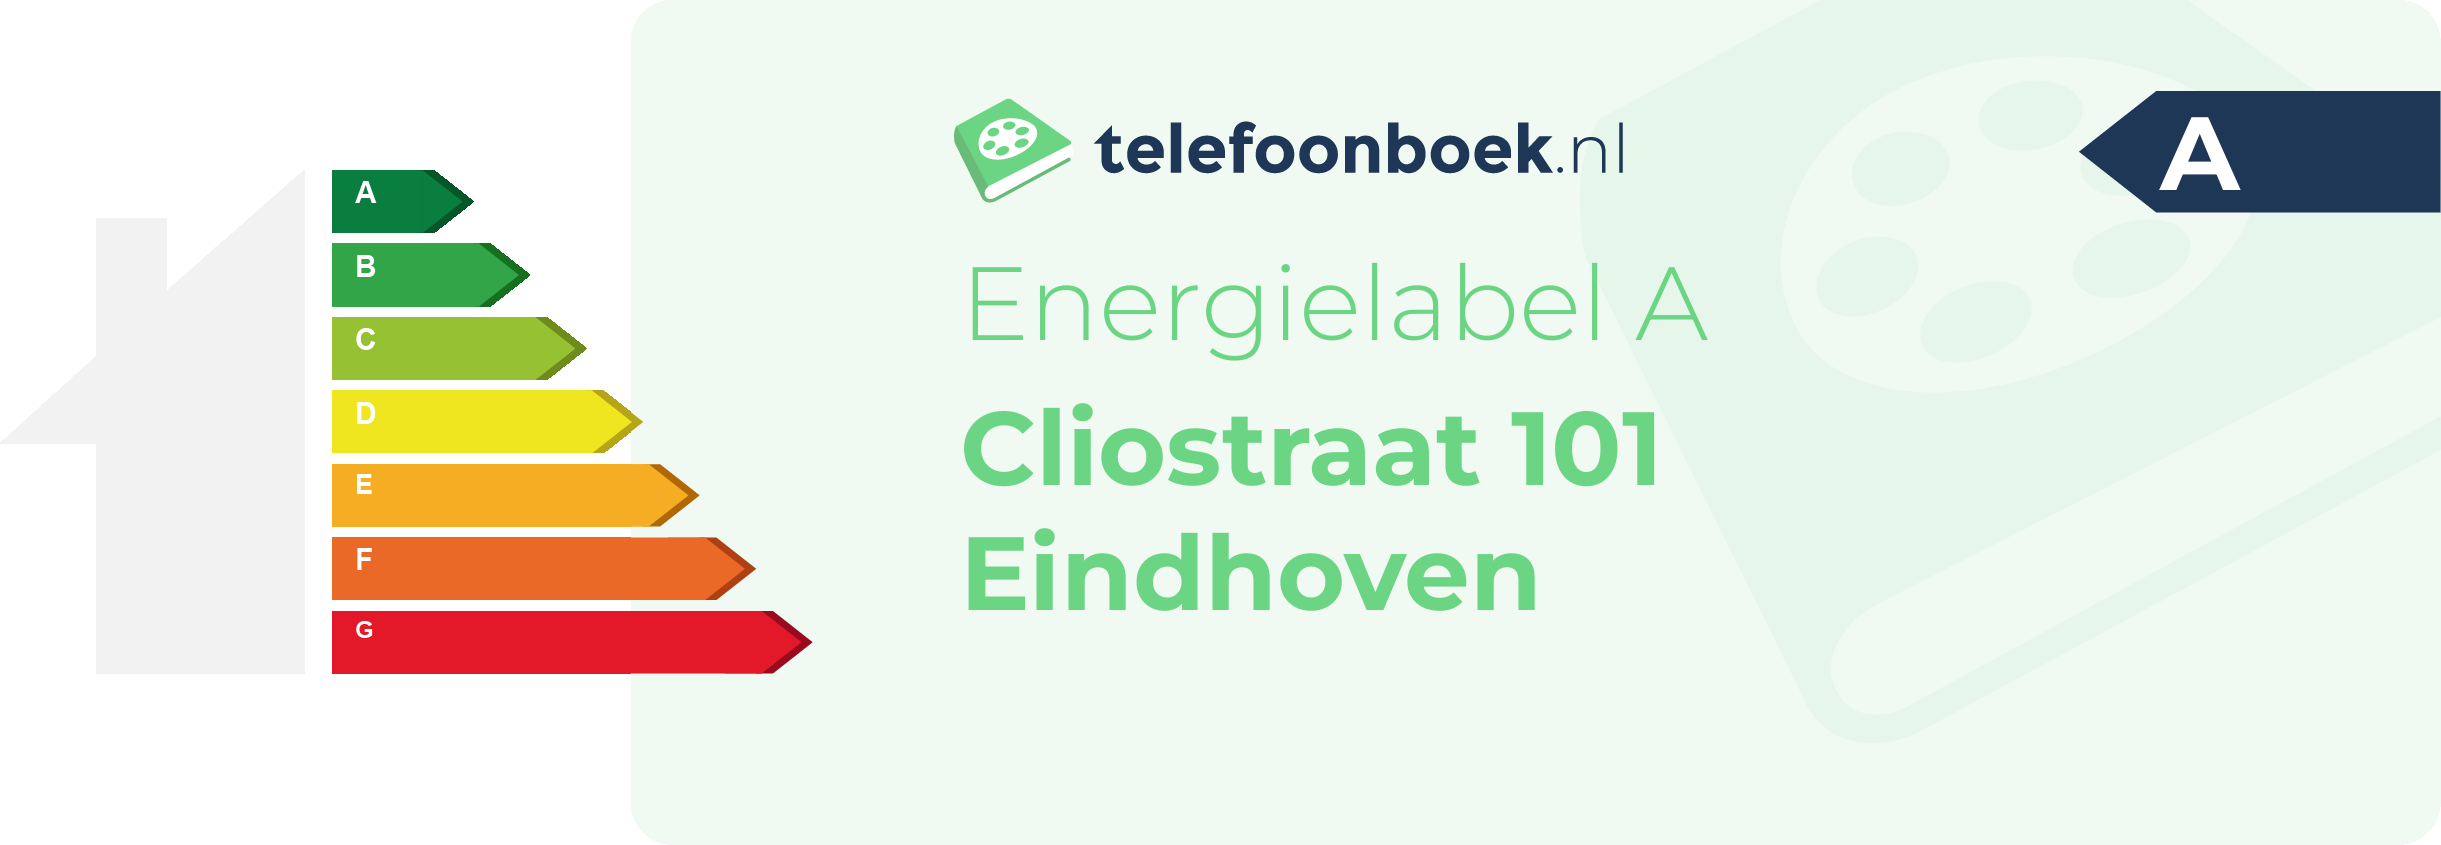 Energielabel Cliostraat 101 Eindhoven